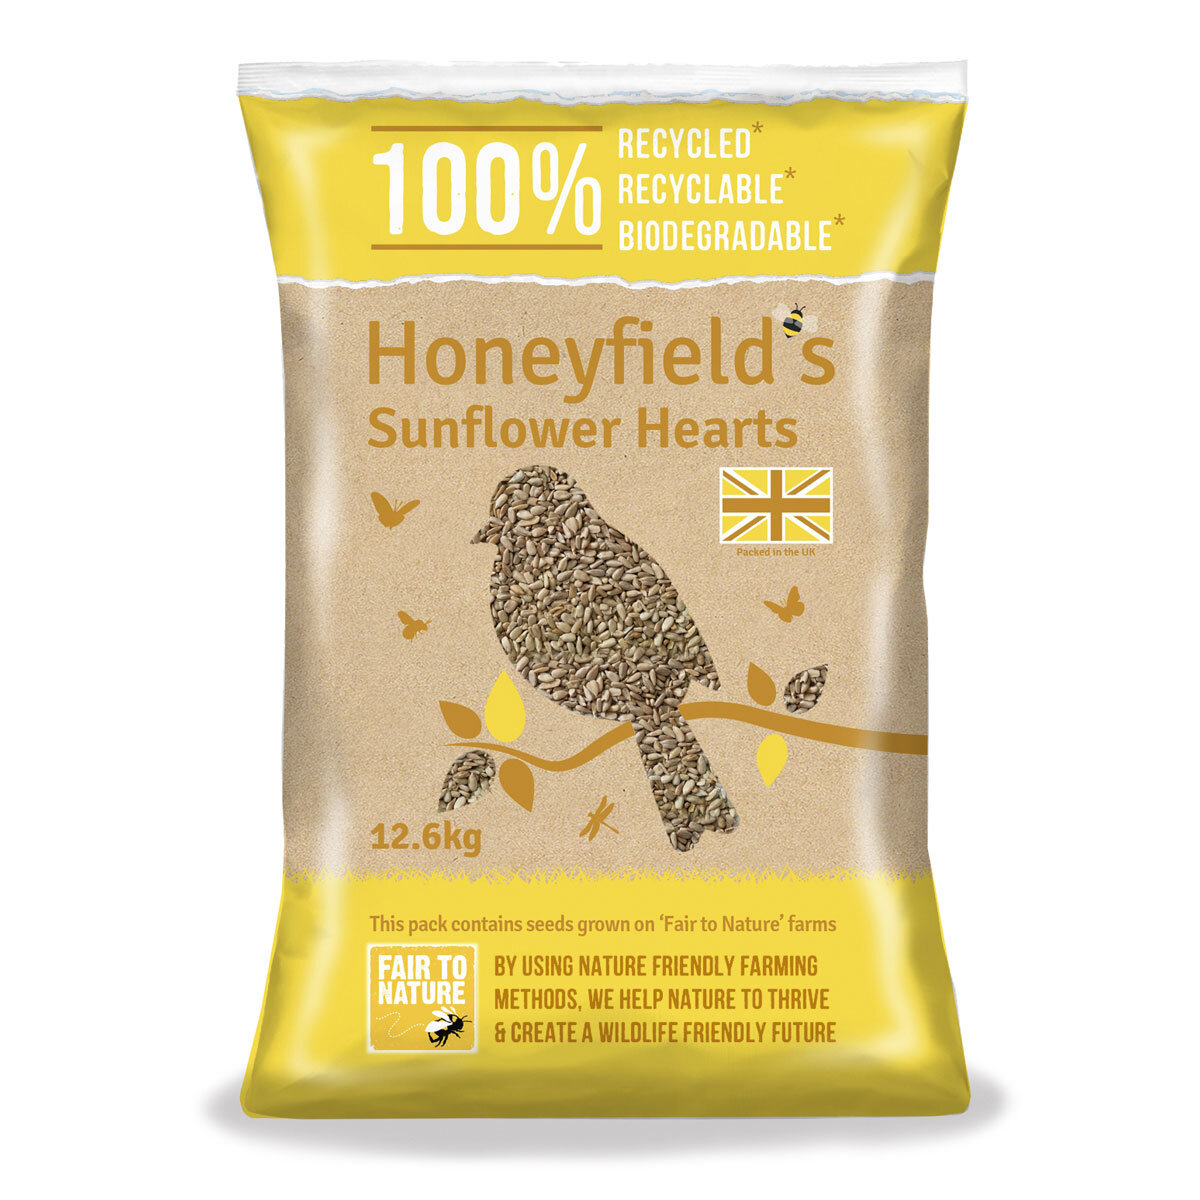 Honeyfield's Sunflower Hearts Wild Bird Food, 12.6kg